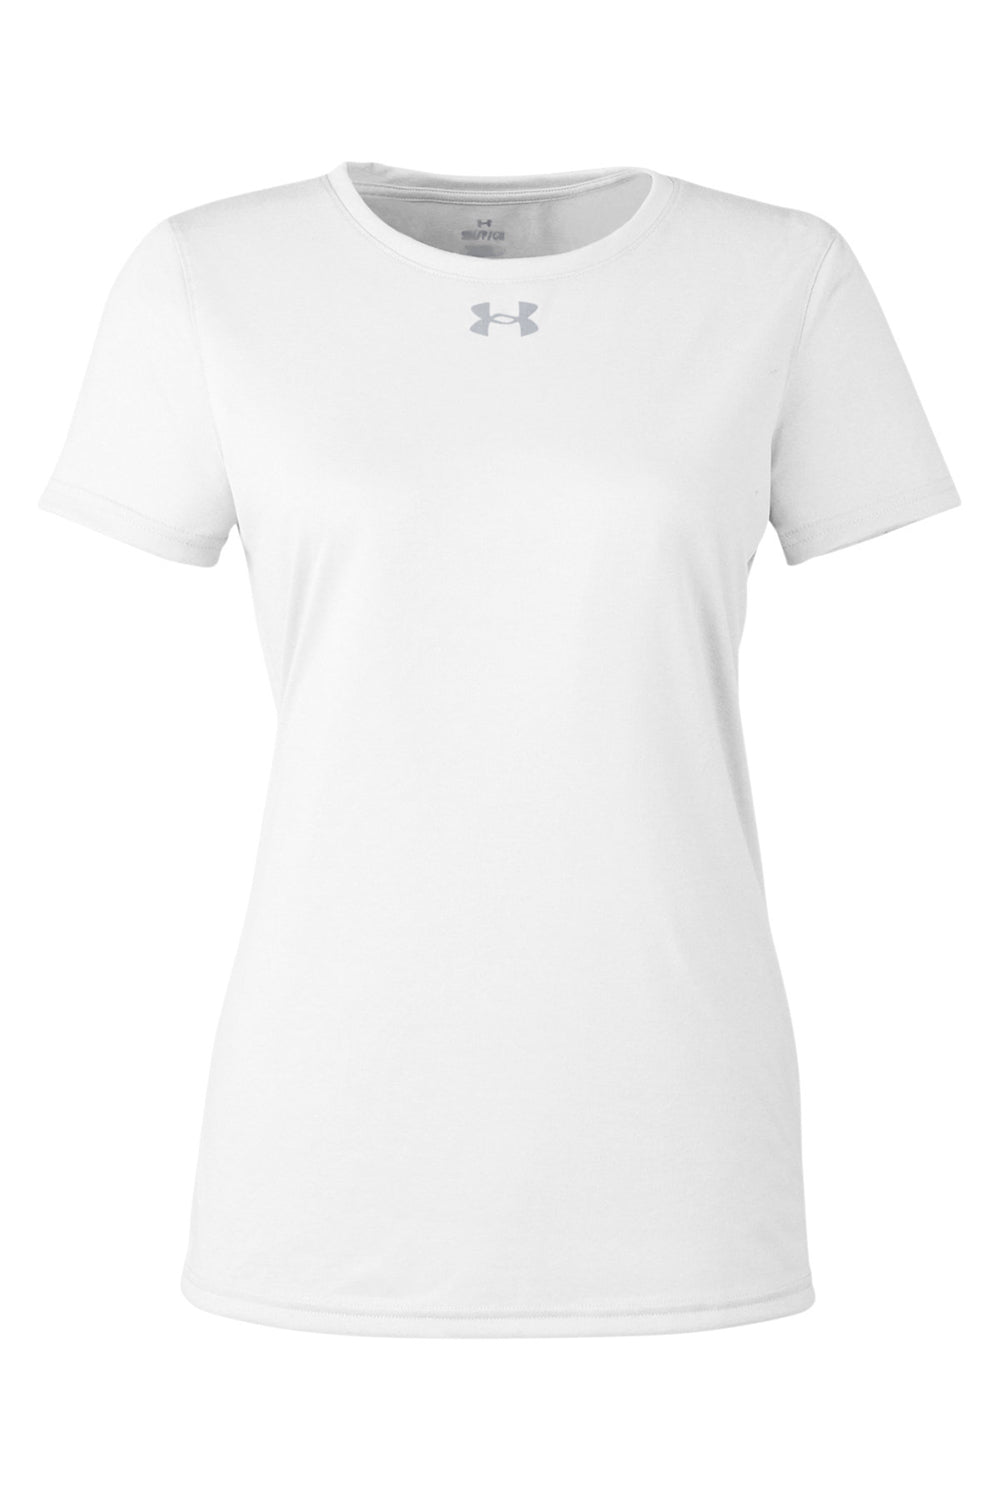 Under Armour 1376847 Womens Team Tech Moisture Wicking Short Sleeve Crewneck T-Shirt White Flat Front